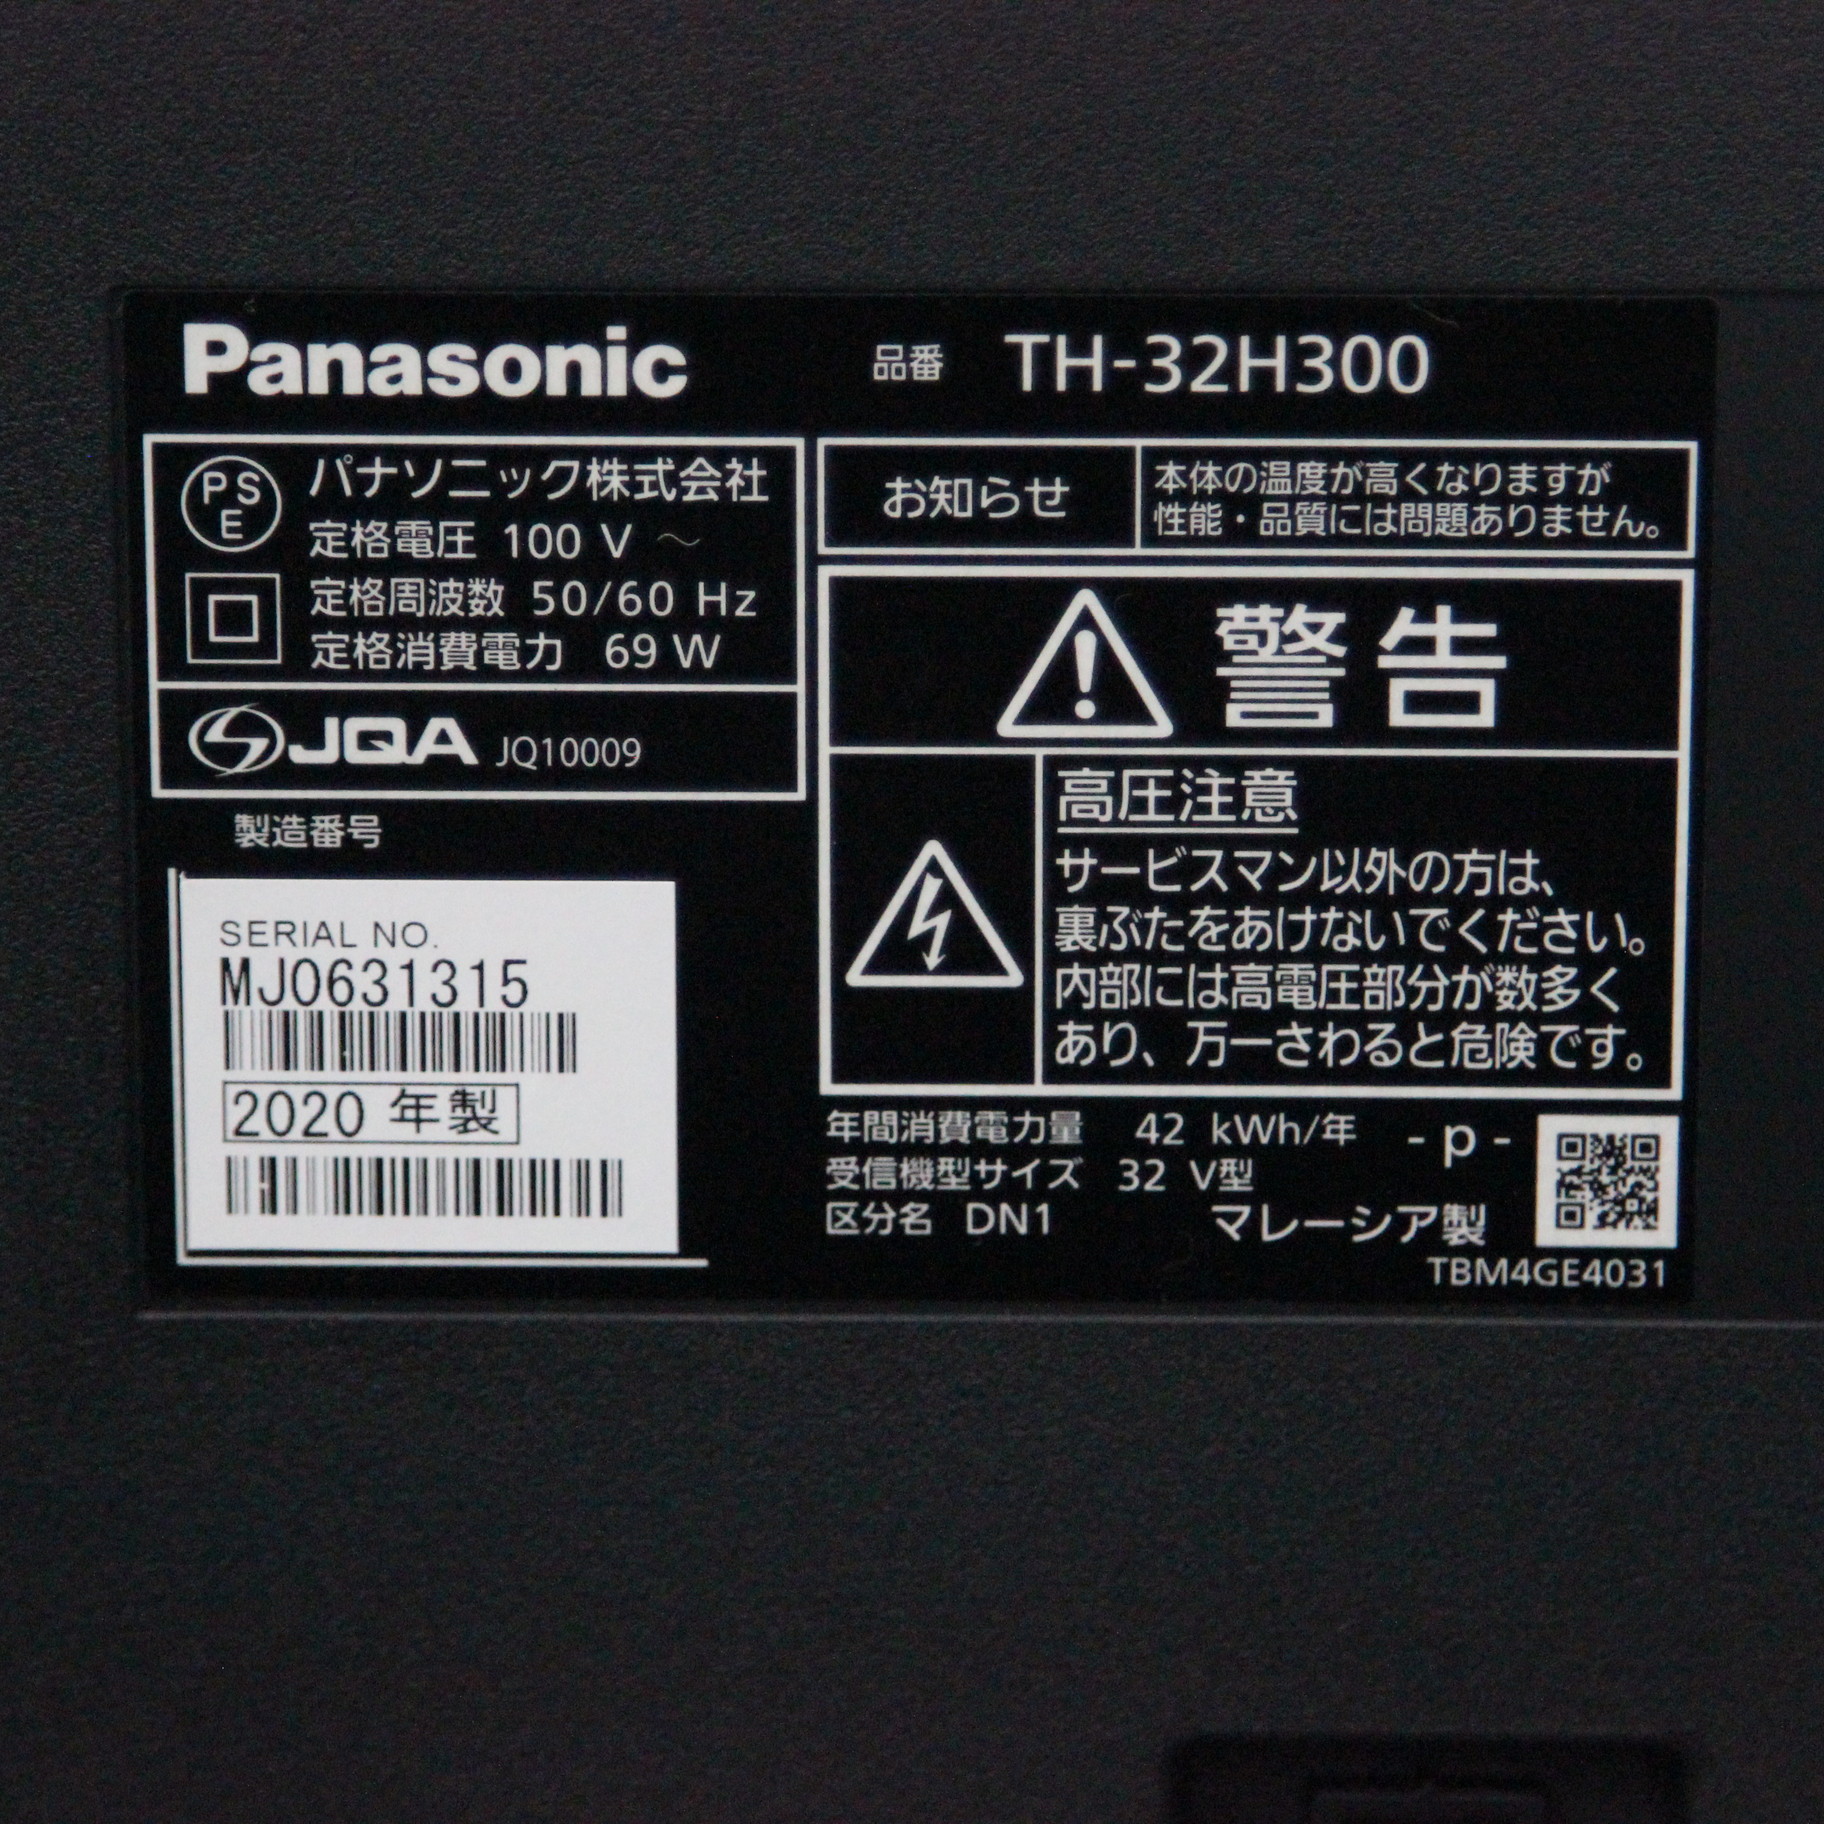 パナソニック Panasonic TH-32H300 液晶テレビ 2020年製造 - テレビ